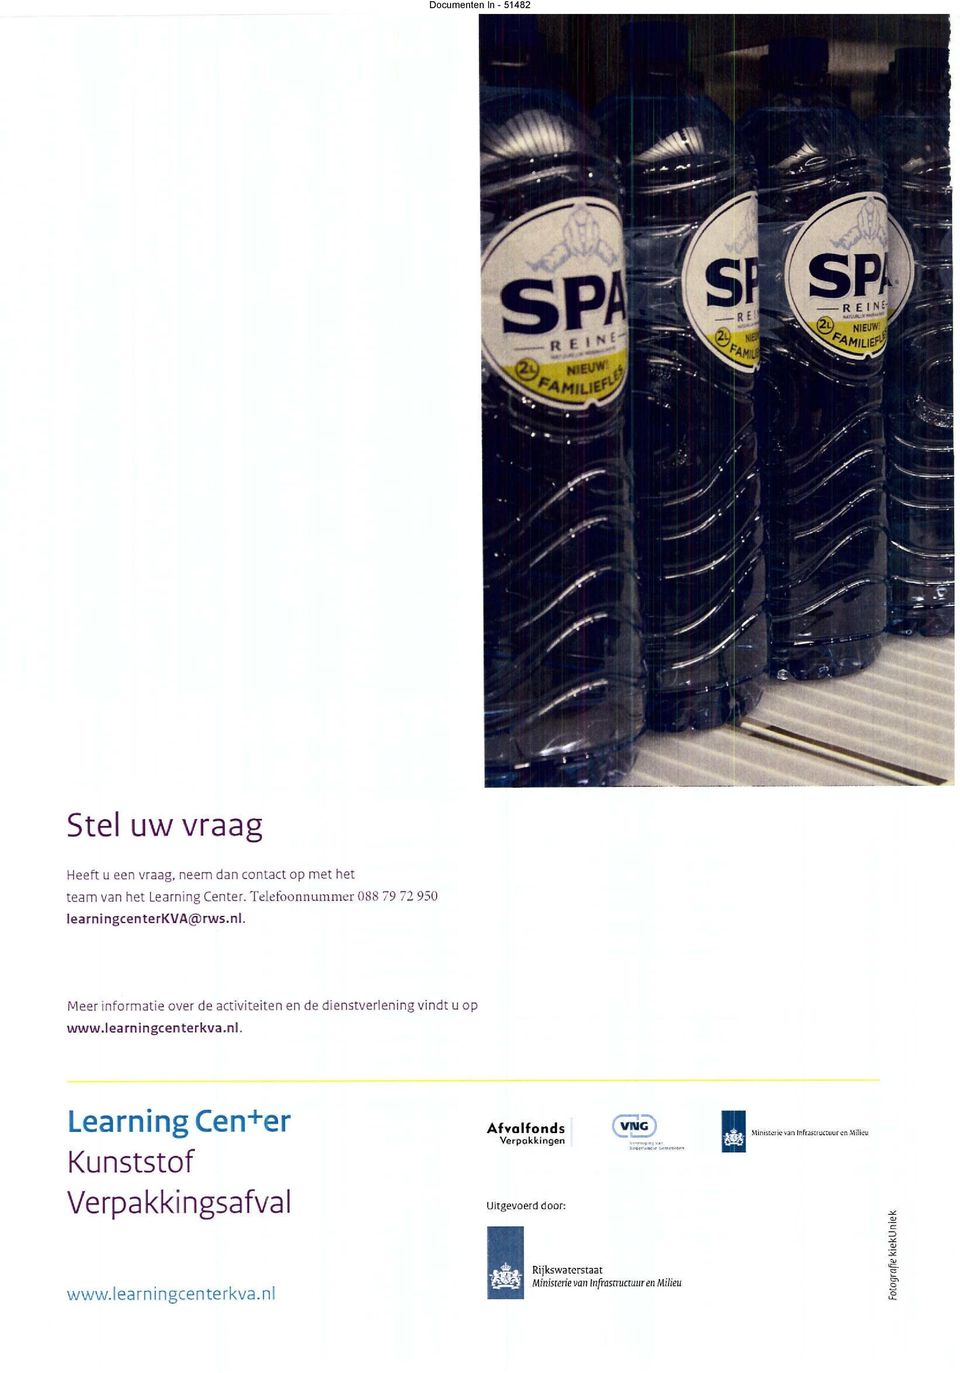 Meer informatie over de activiteiten en de dienstverlening www.learningcenterkva.nl.